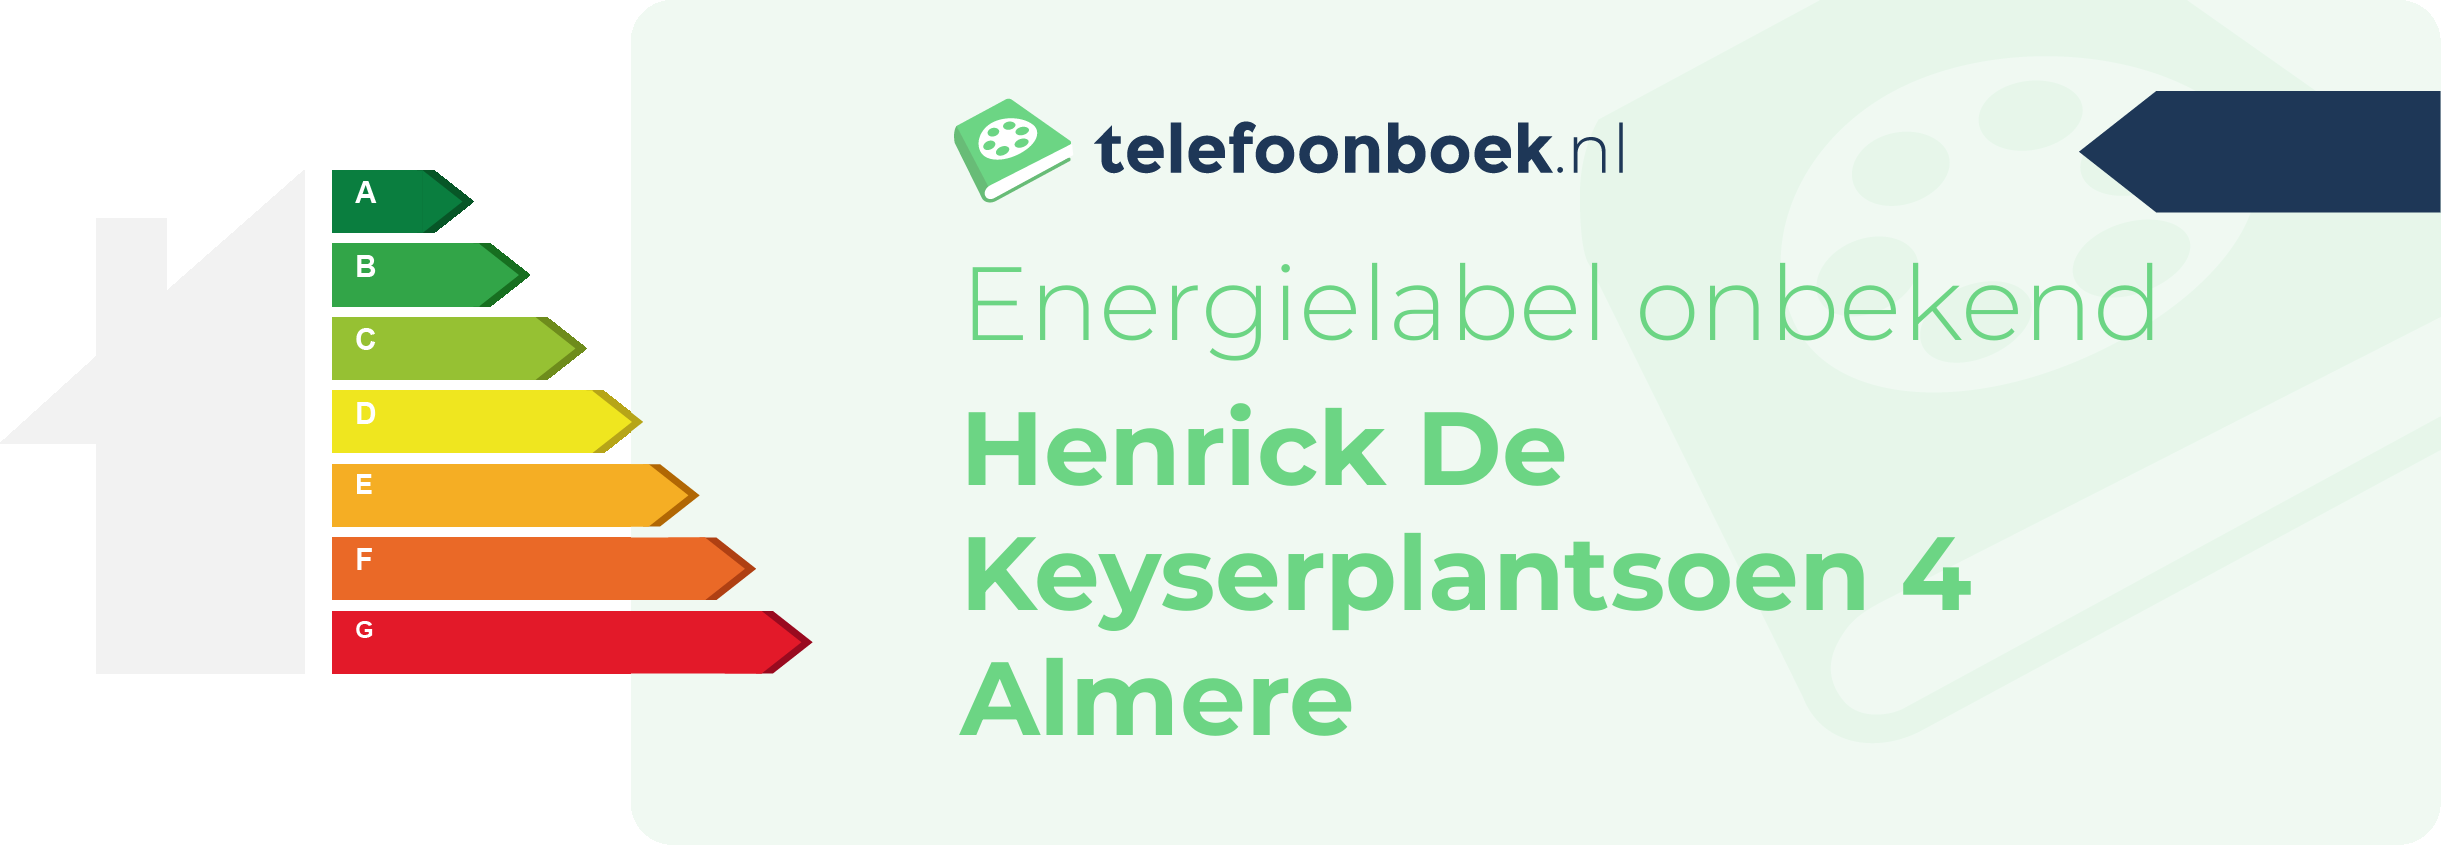 Energielabel Henrick De Keyserplantsoen 4 Almere